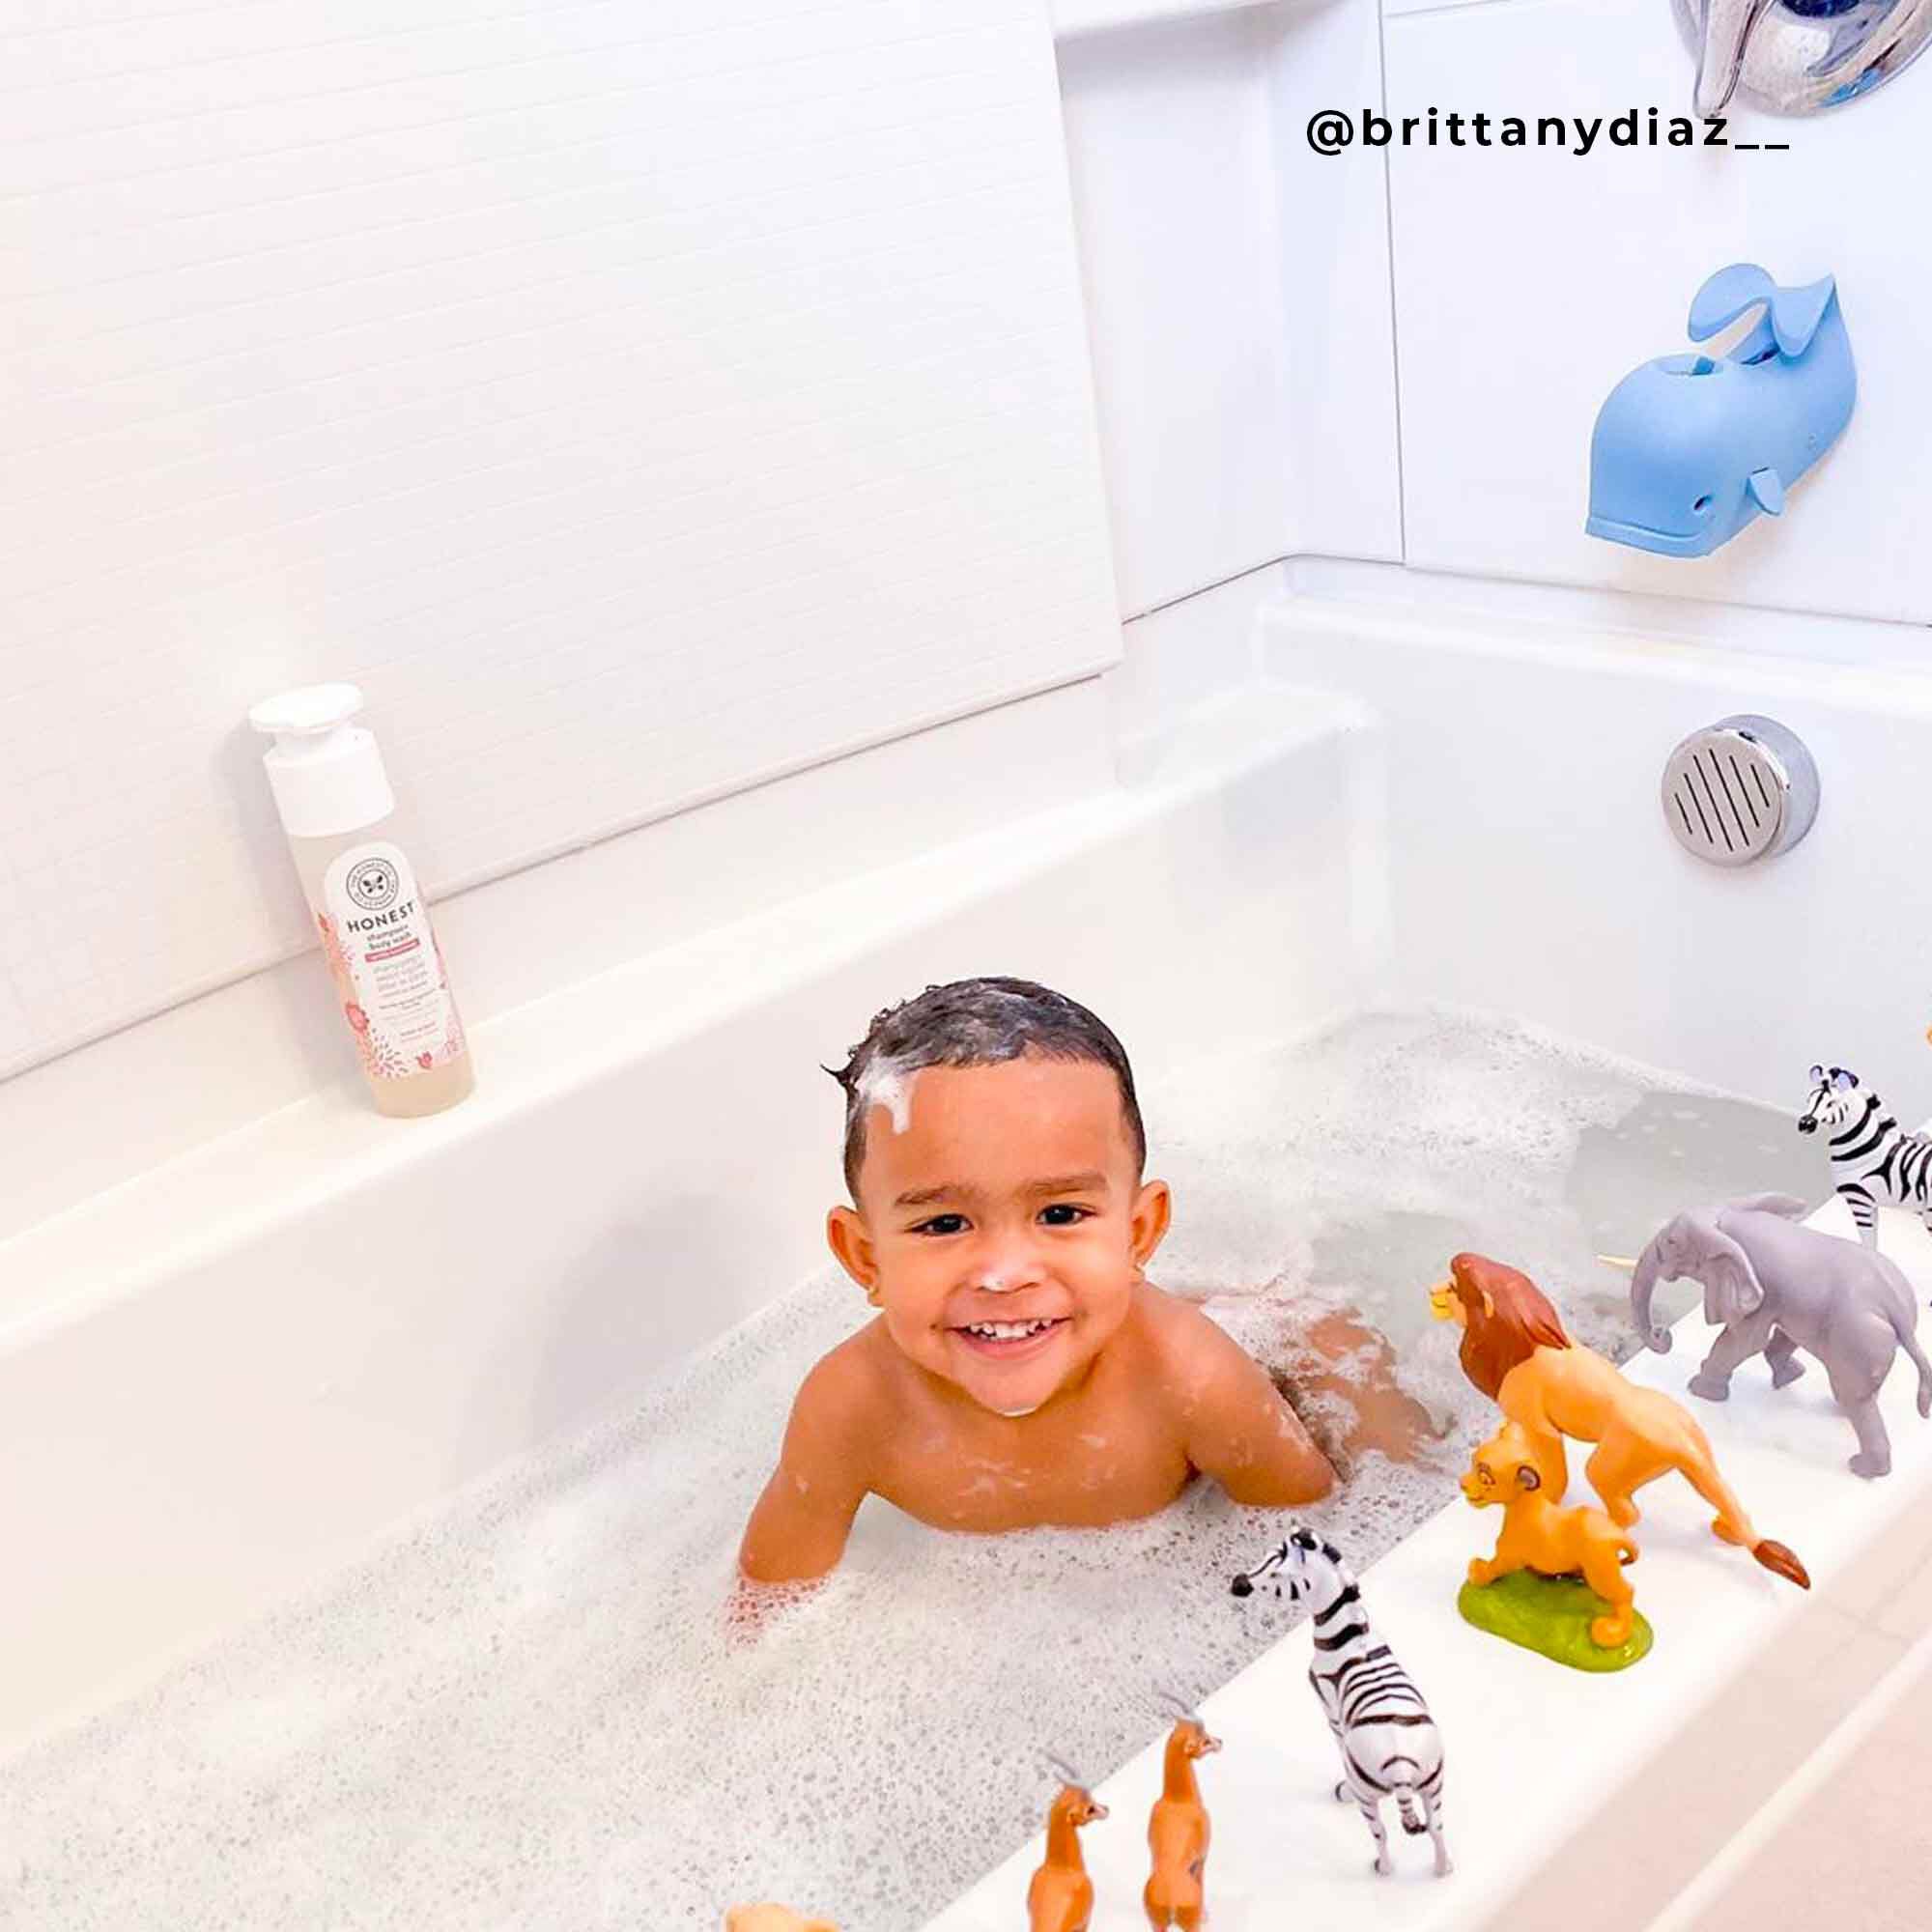 Best Bubble Bath for Kids in 2020: Honest Company, Hello Bello & More